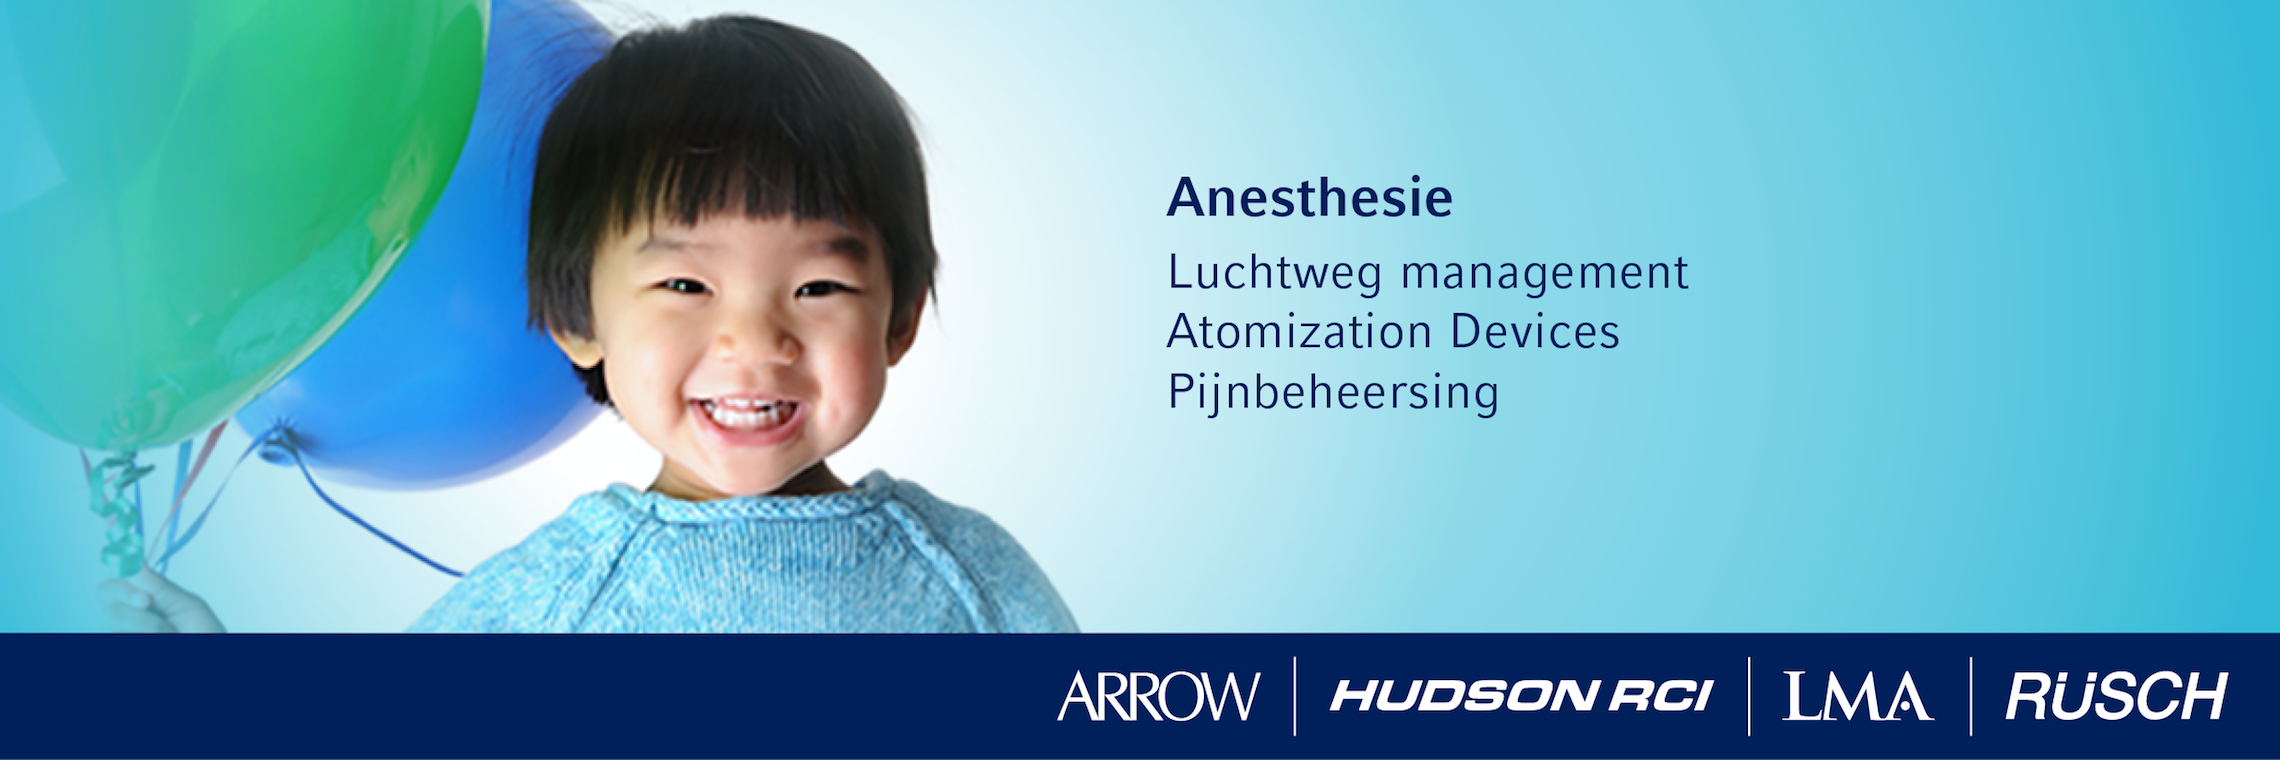 emea - anaesthesia - dutch banner - 1